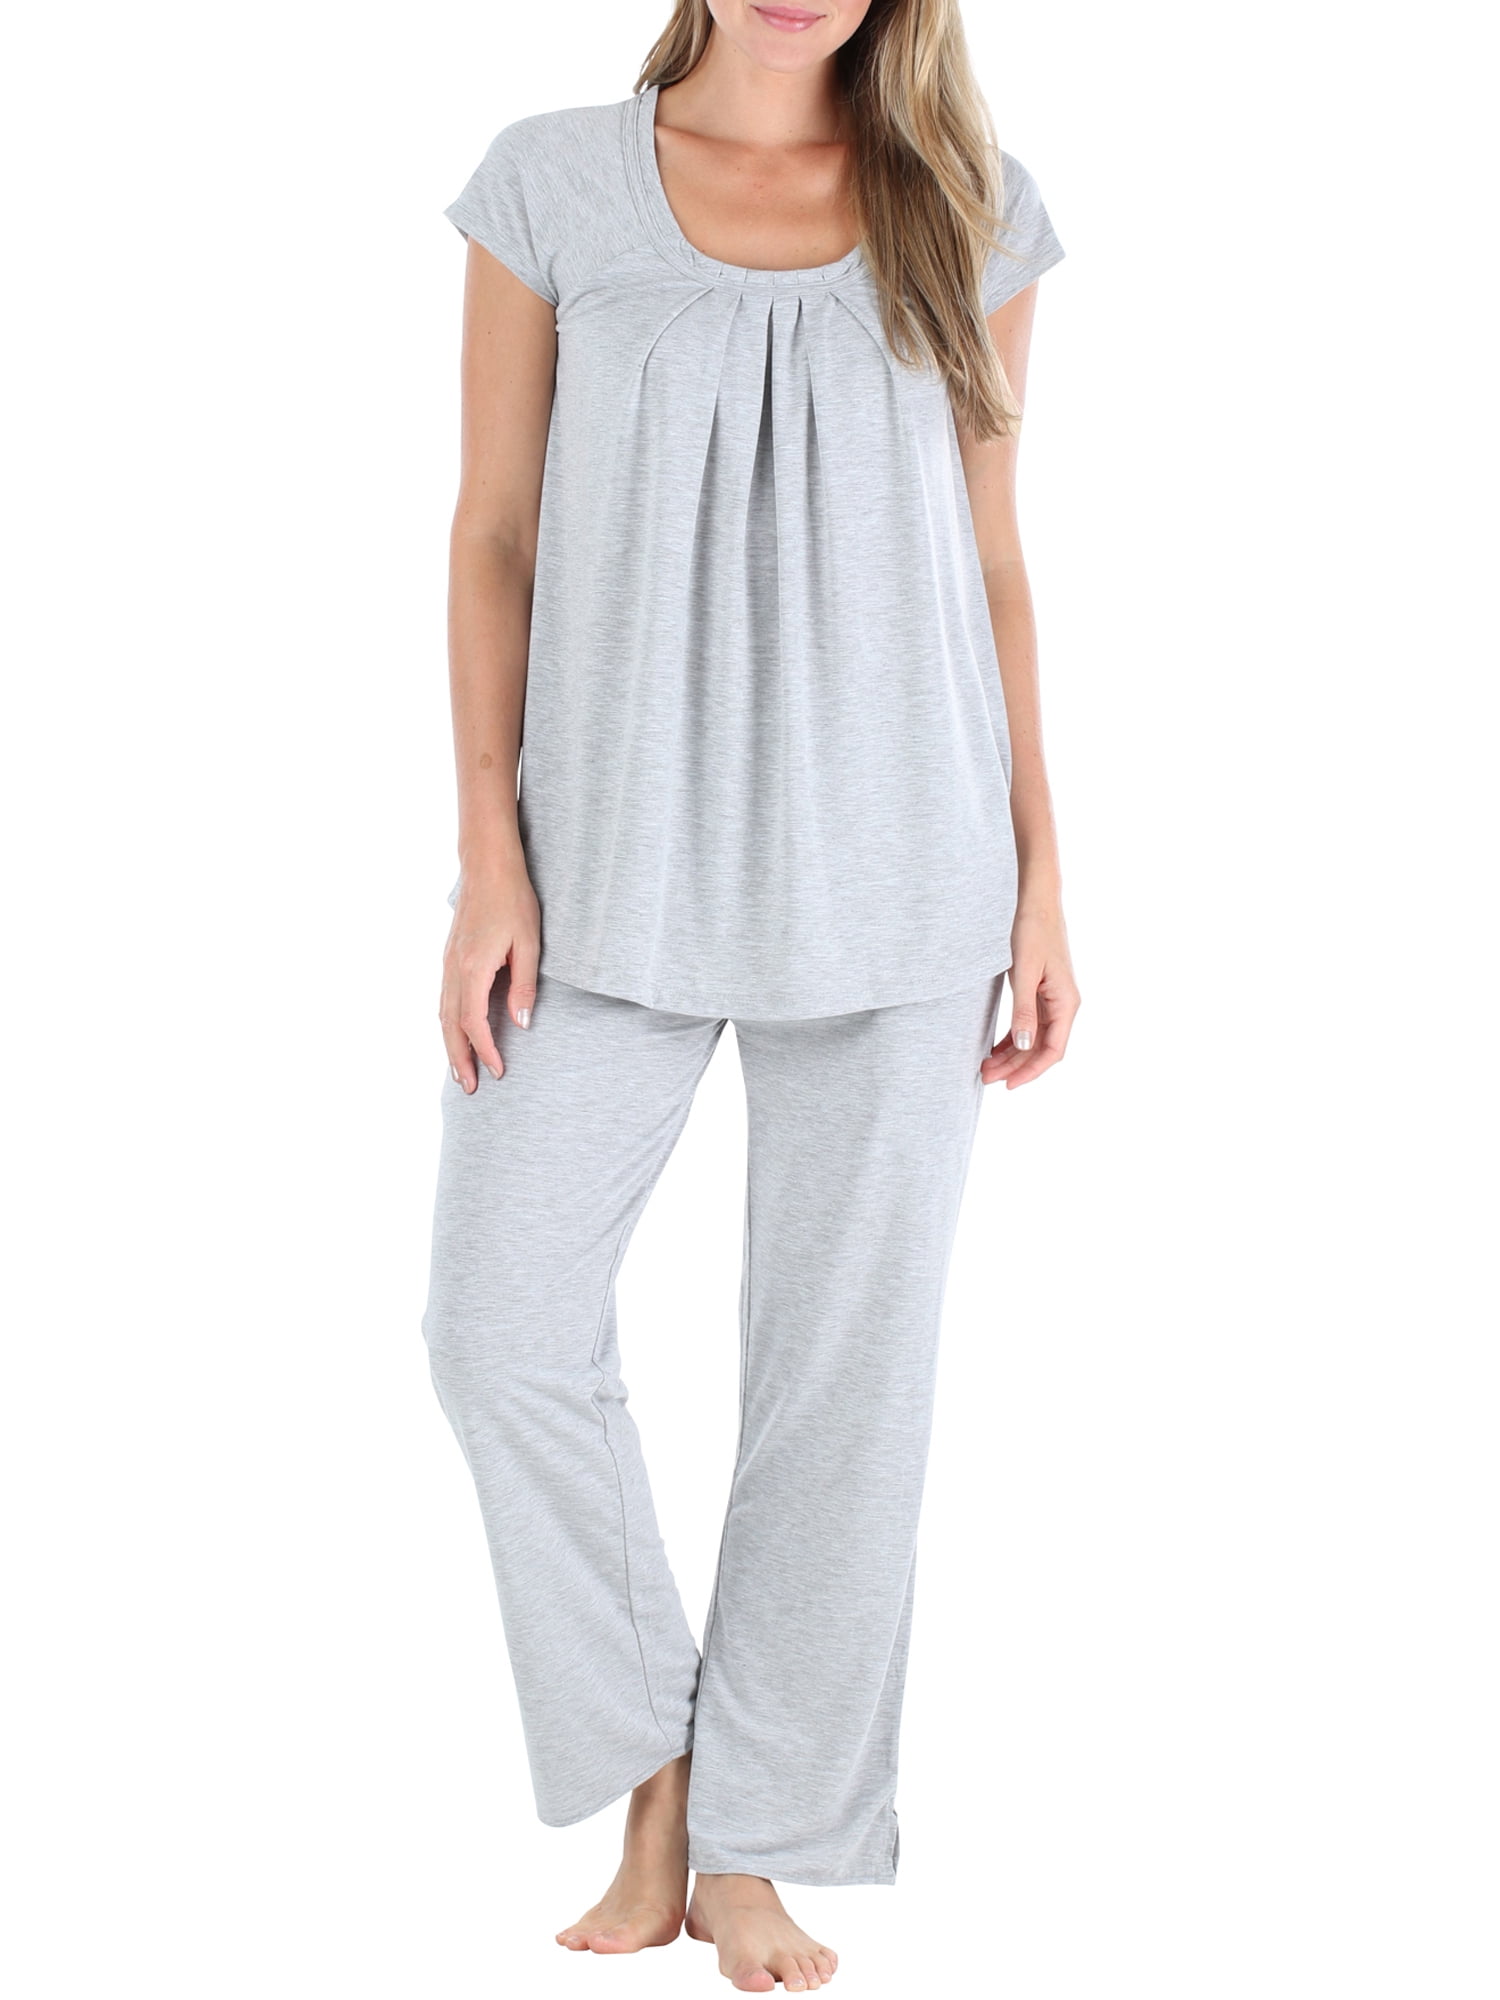 PajamaMania Women's Sleepwear Short Sleeve Pajamas PJ Set - Walmart.com